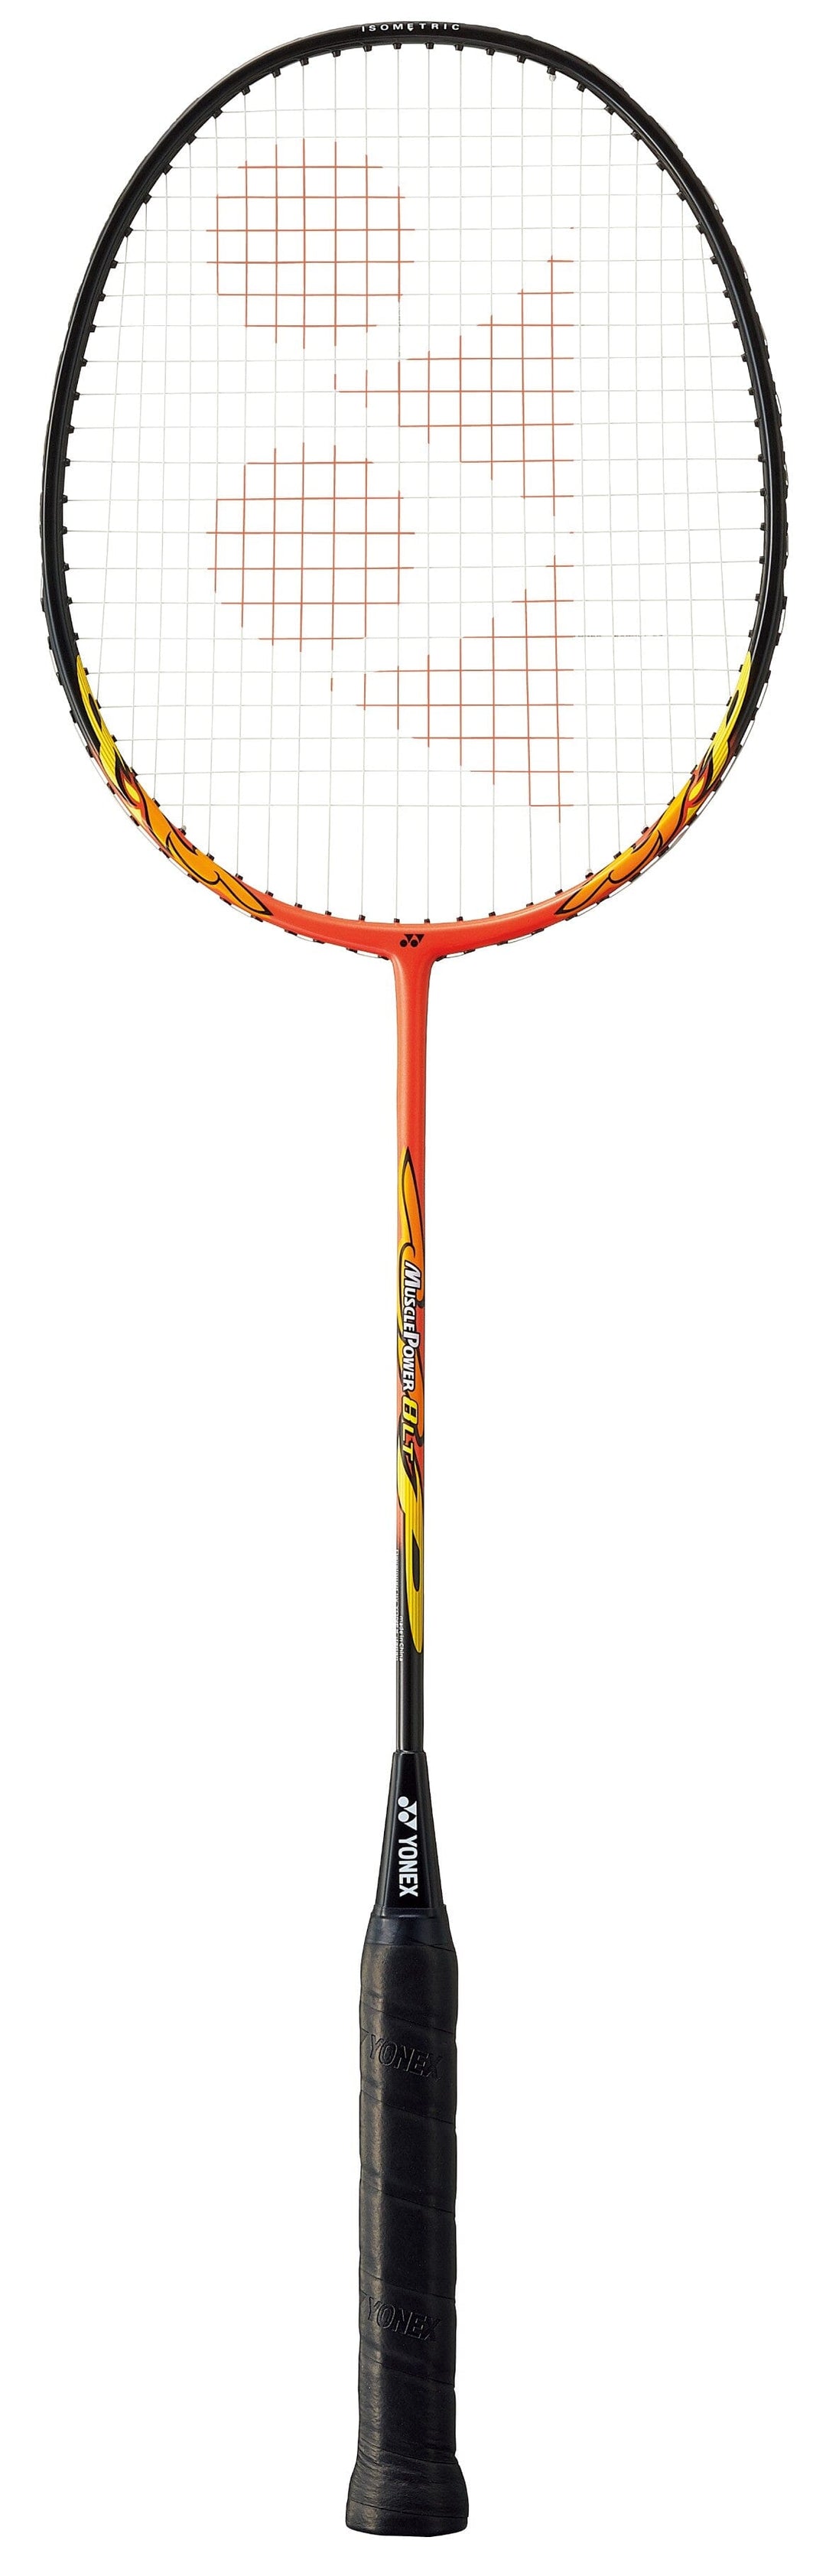 Yonex Muscle Power 8LT Orange Badminton Racquet Strung Badminton Racquets Yonex 